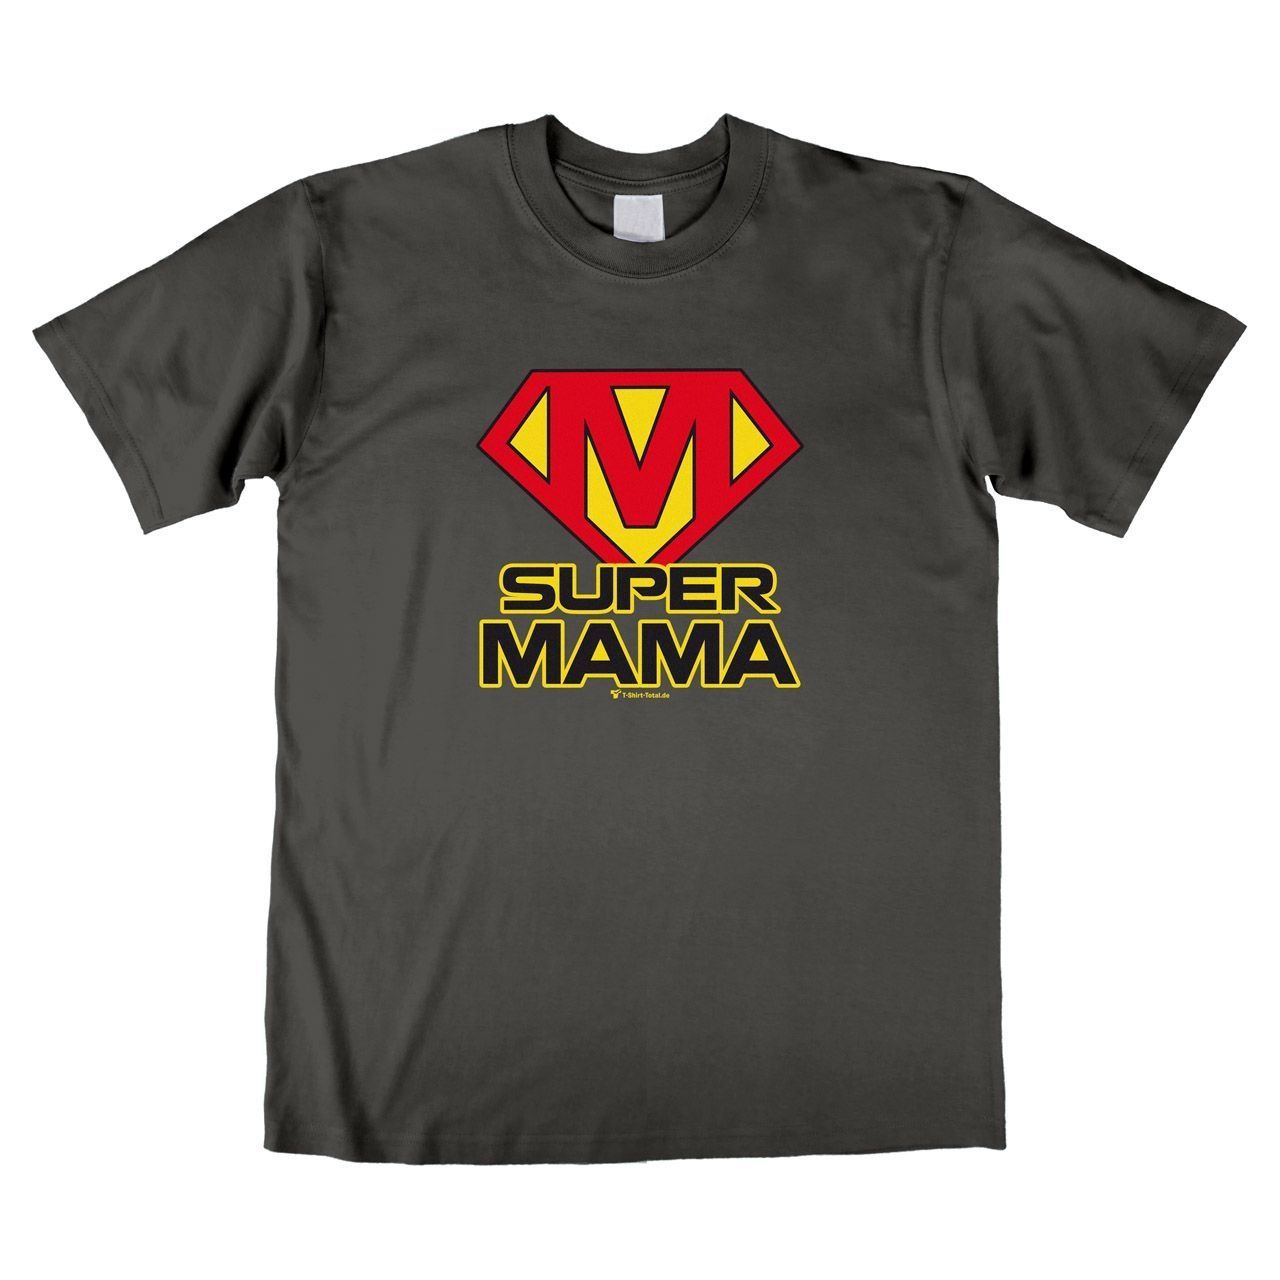 Super Mama Unisex T-Shirt grau Small